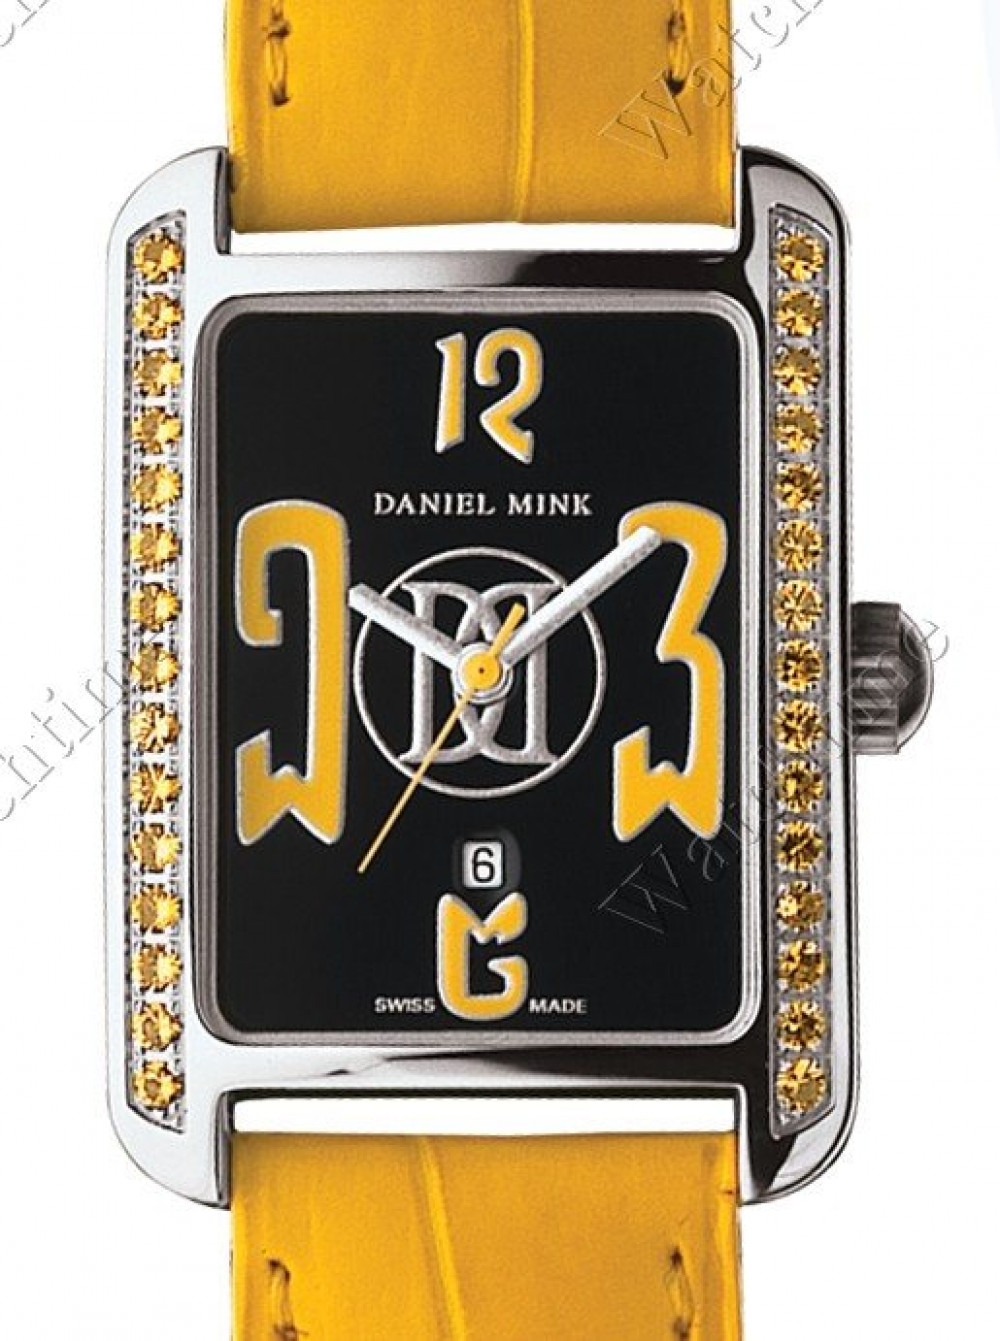 Zegarek firmy Daniel Mink, model Fusion-D